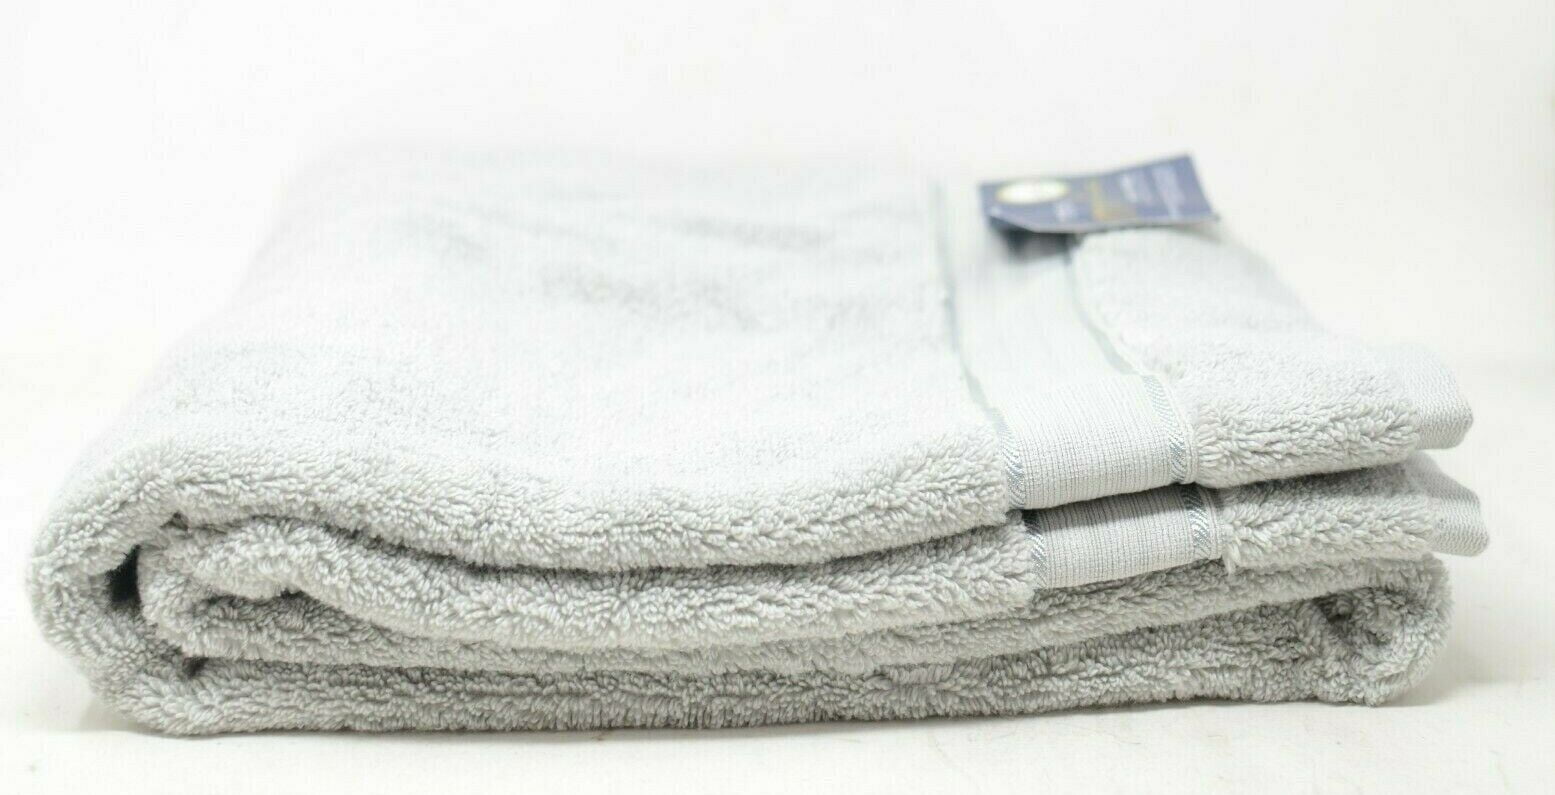 Purely Indulgent bath towel 30”X58” White Oeko-Tex Made In Green NWT